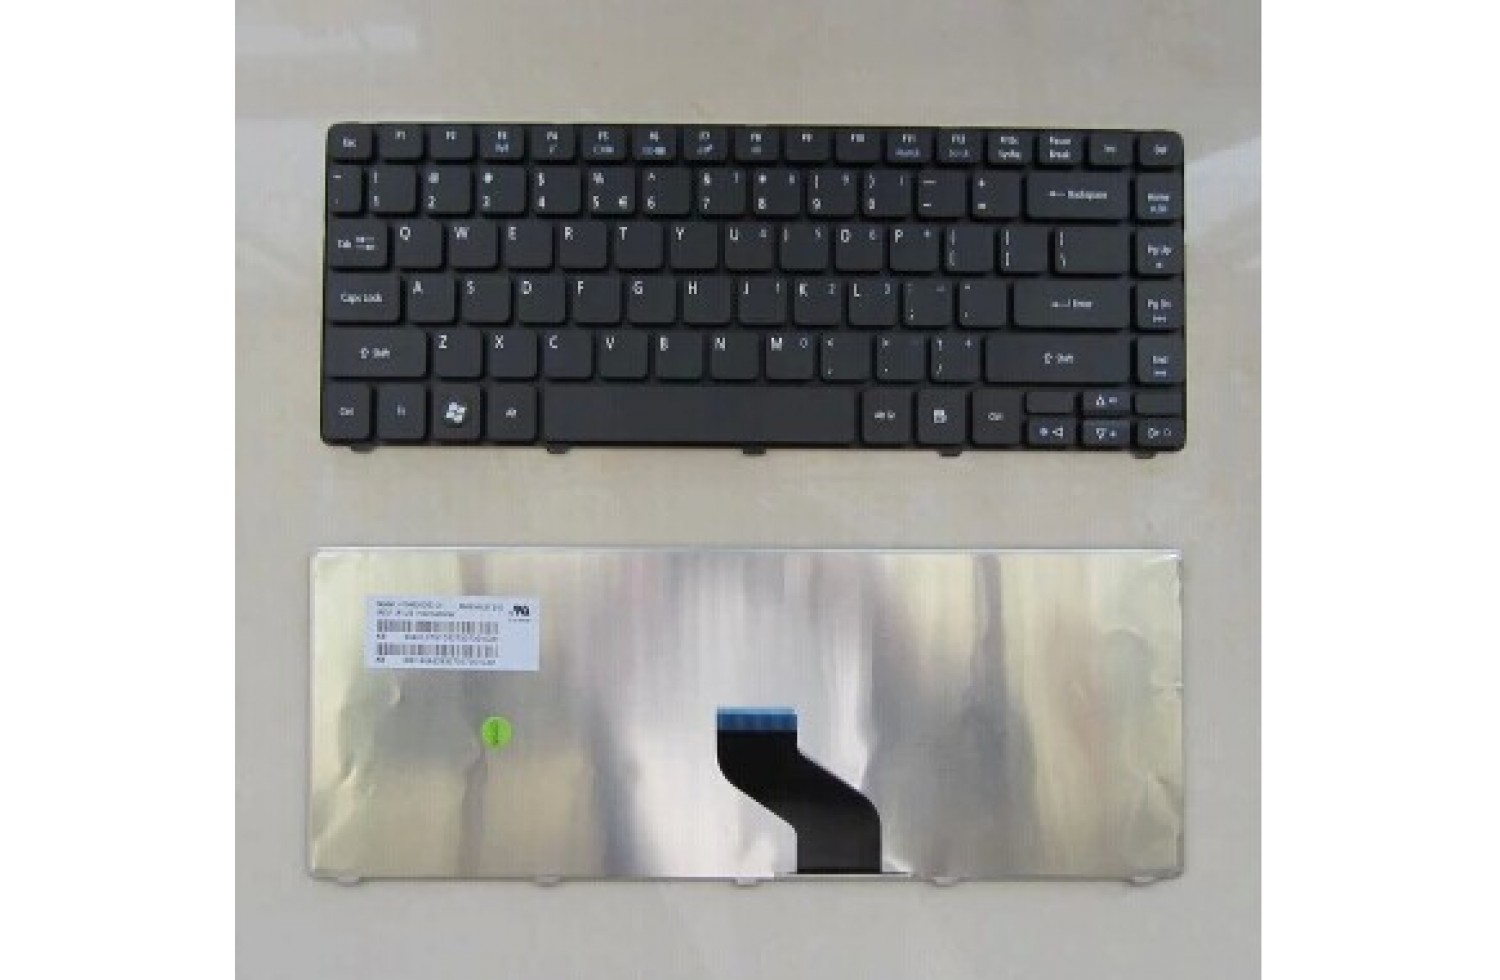 Ноутбук Emachines D440 Цена